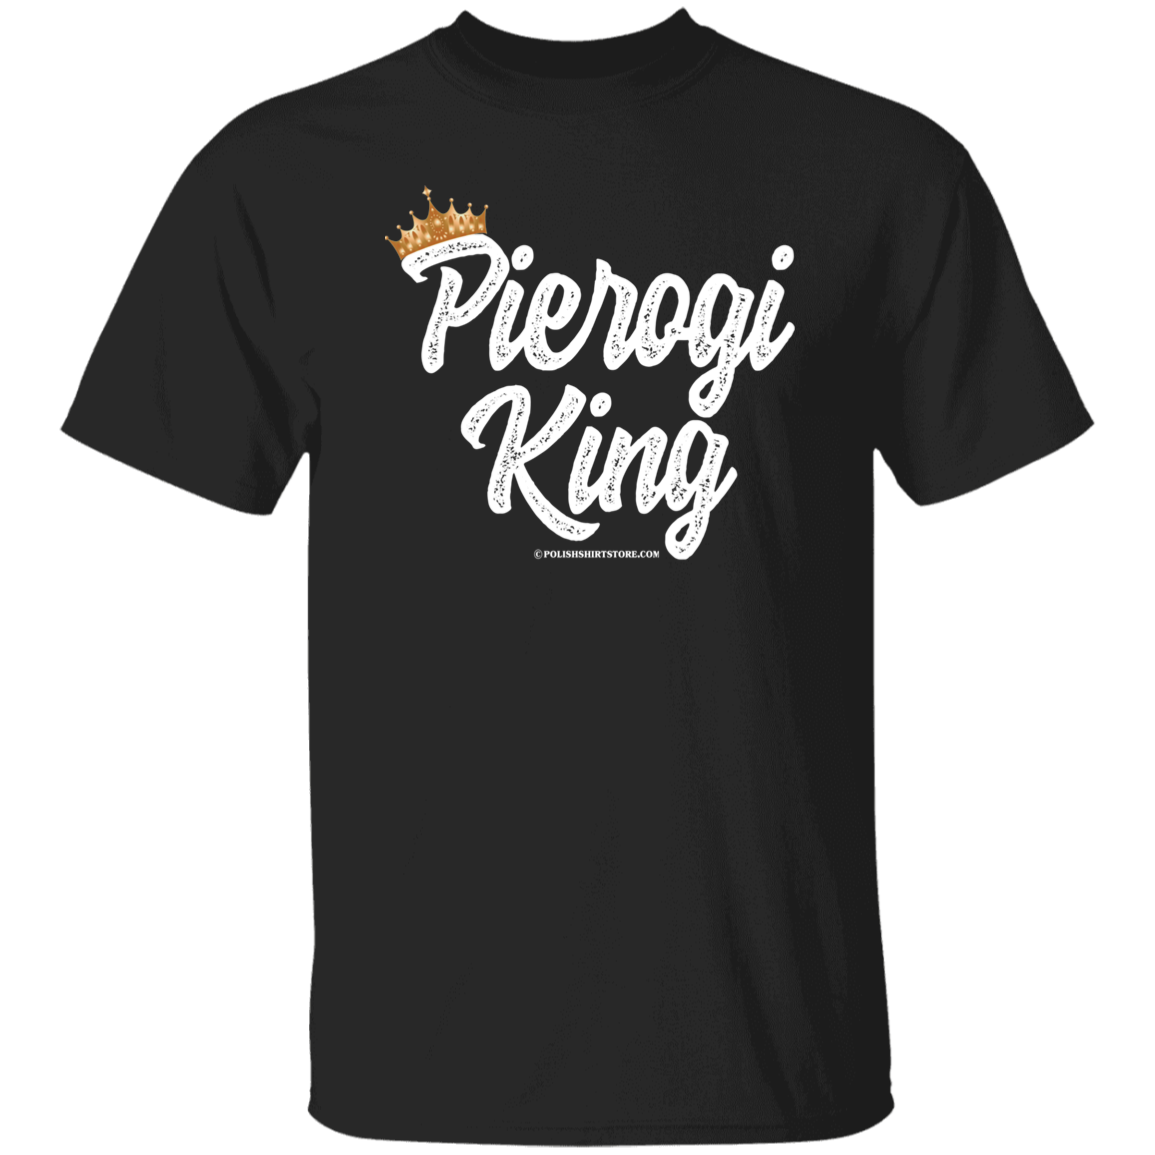 Pierogi King T-Shirt Apparel CustomCat G500 5.3 oz. T-Shirt Black S